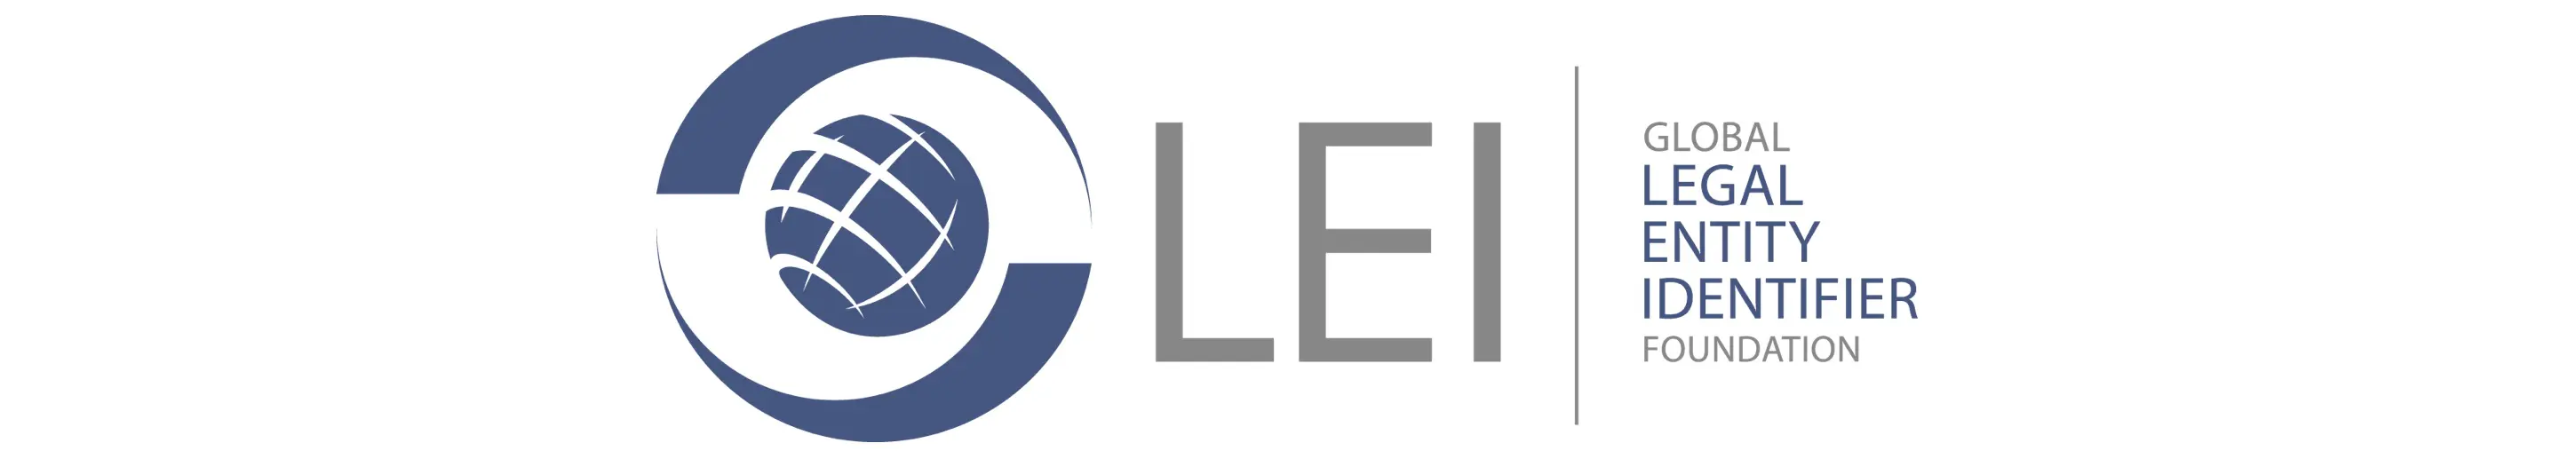 Global Legal Entity Identifier Foundation - GLEIF